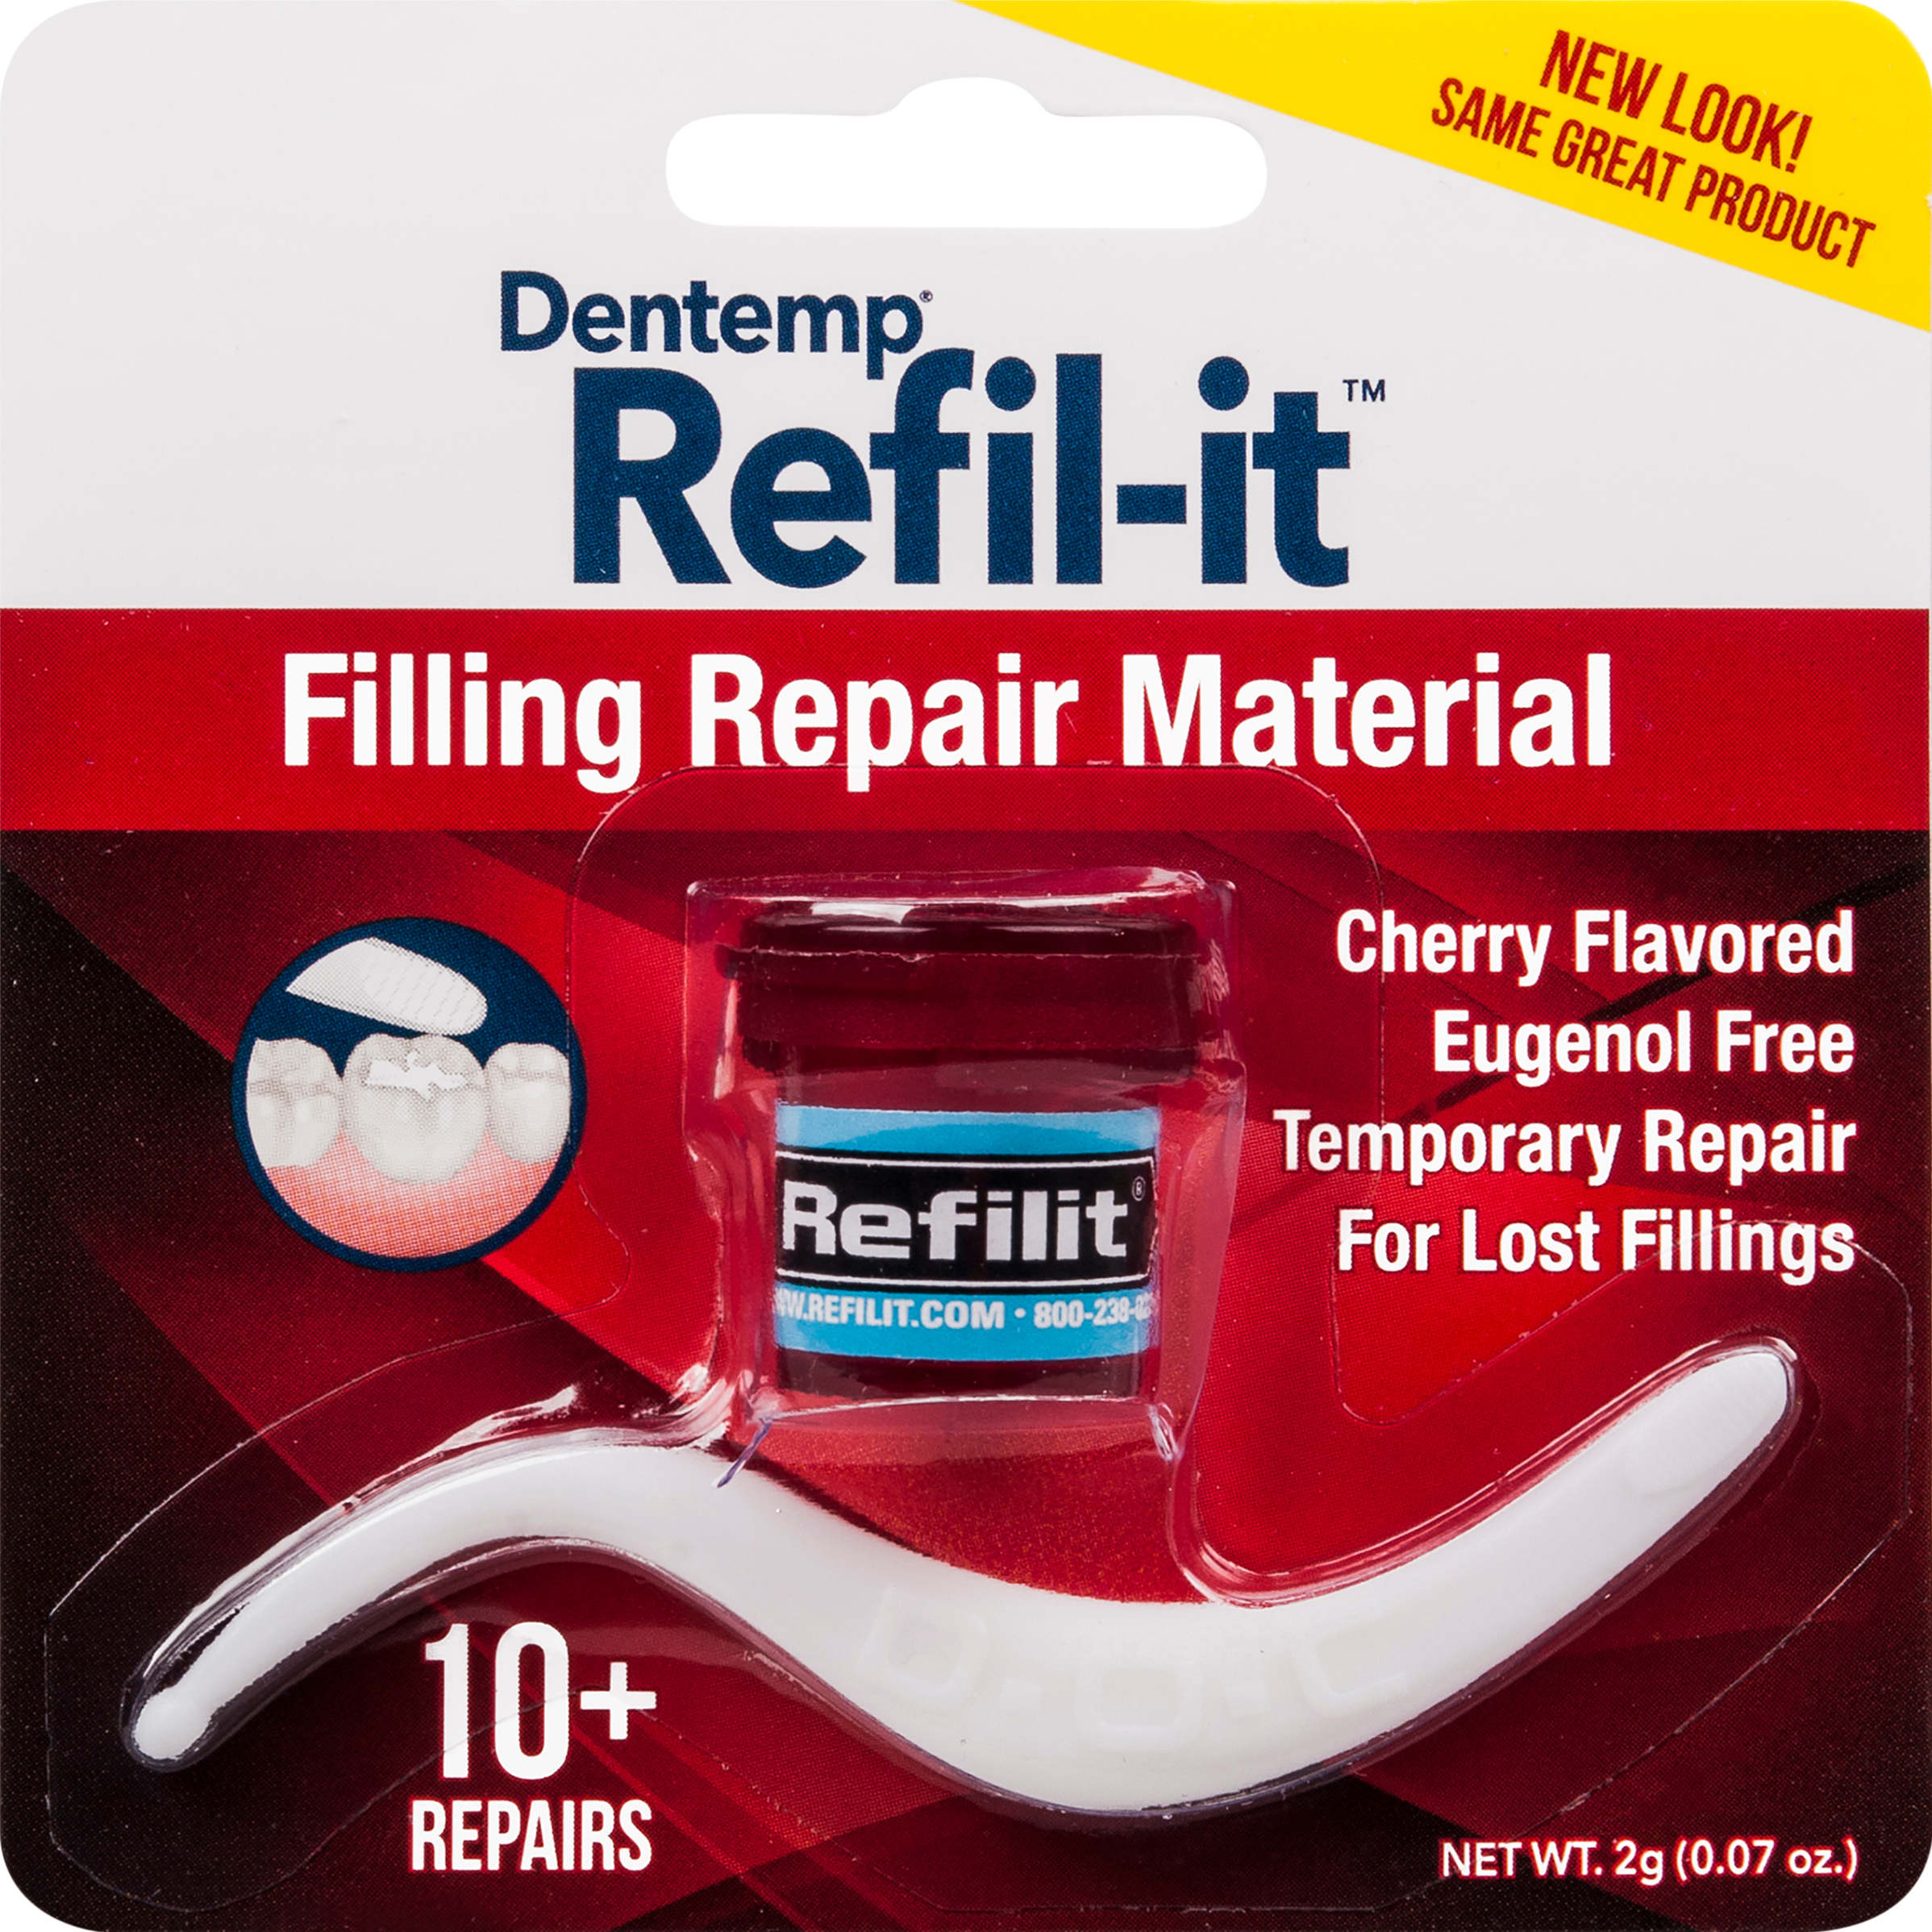 D.O.C. Refil-it Filling Repair Material Cherry Flavor - 2 GM - image 3 of 3